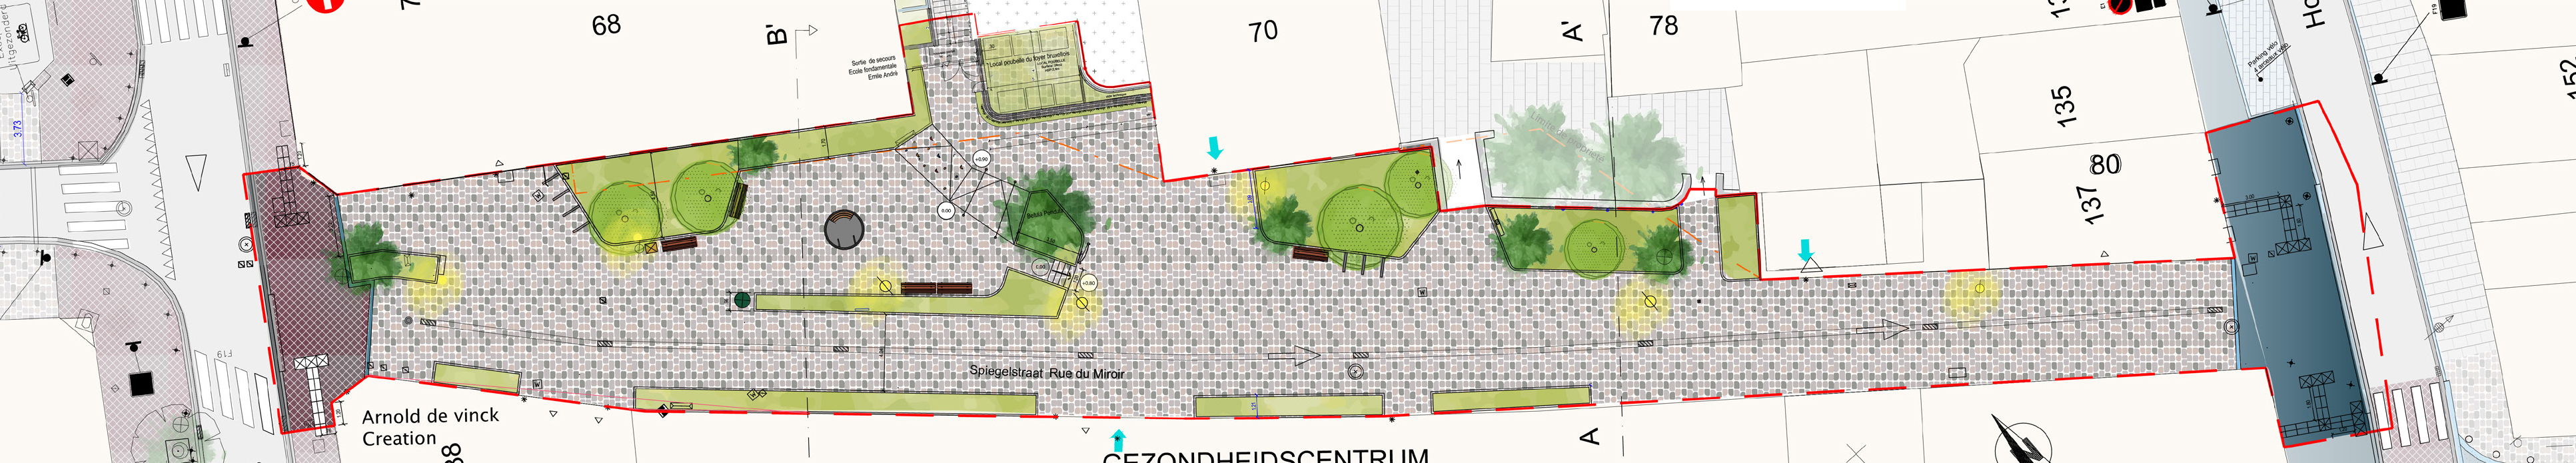 Voorstel plan heraanleg voor de Spiegelstraat